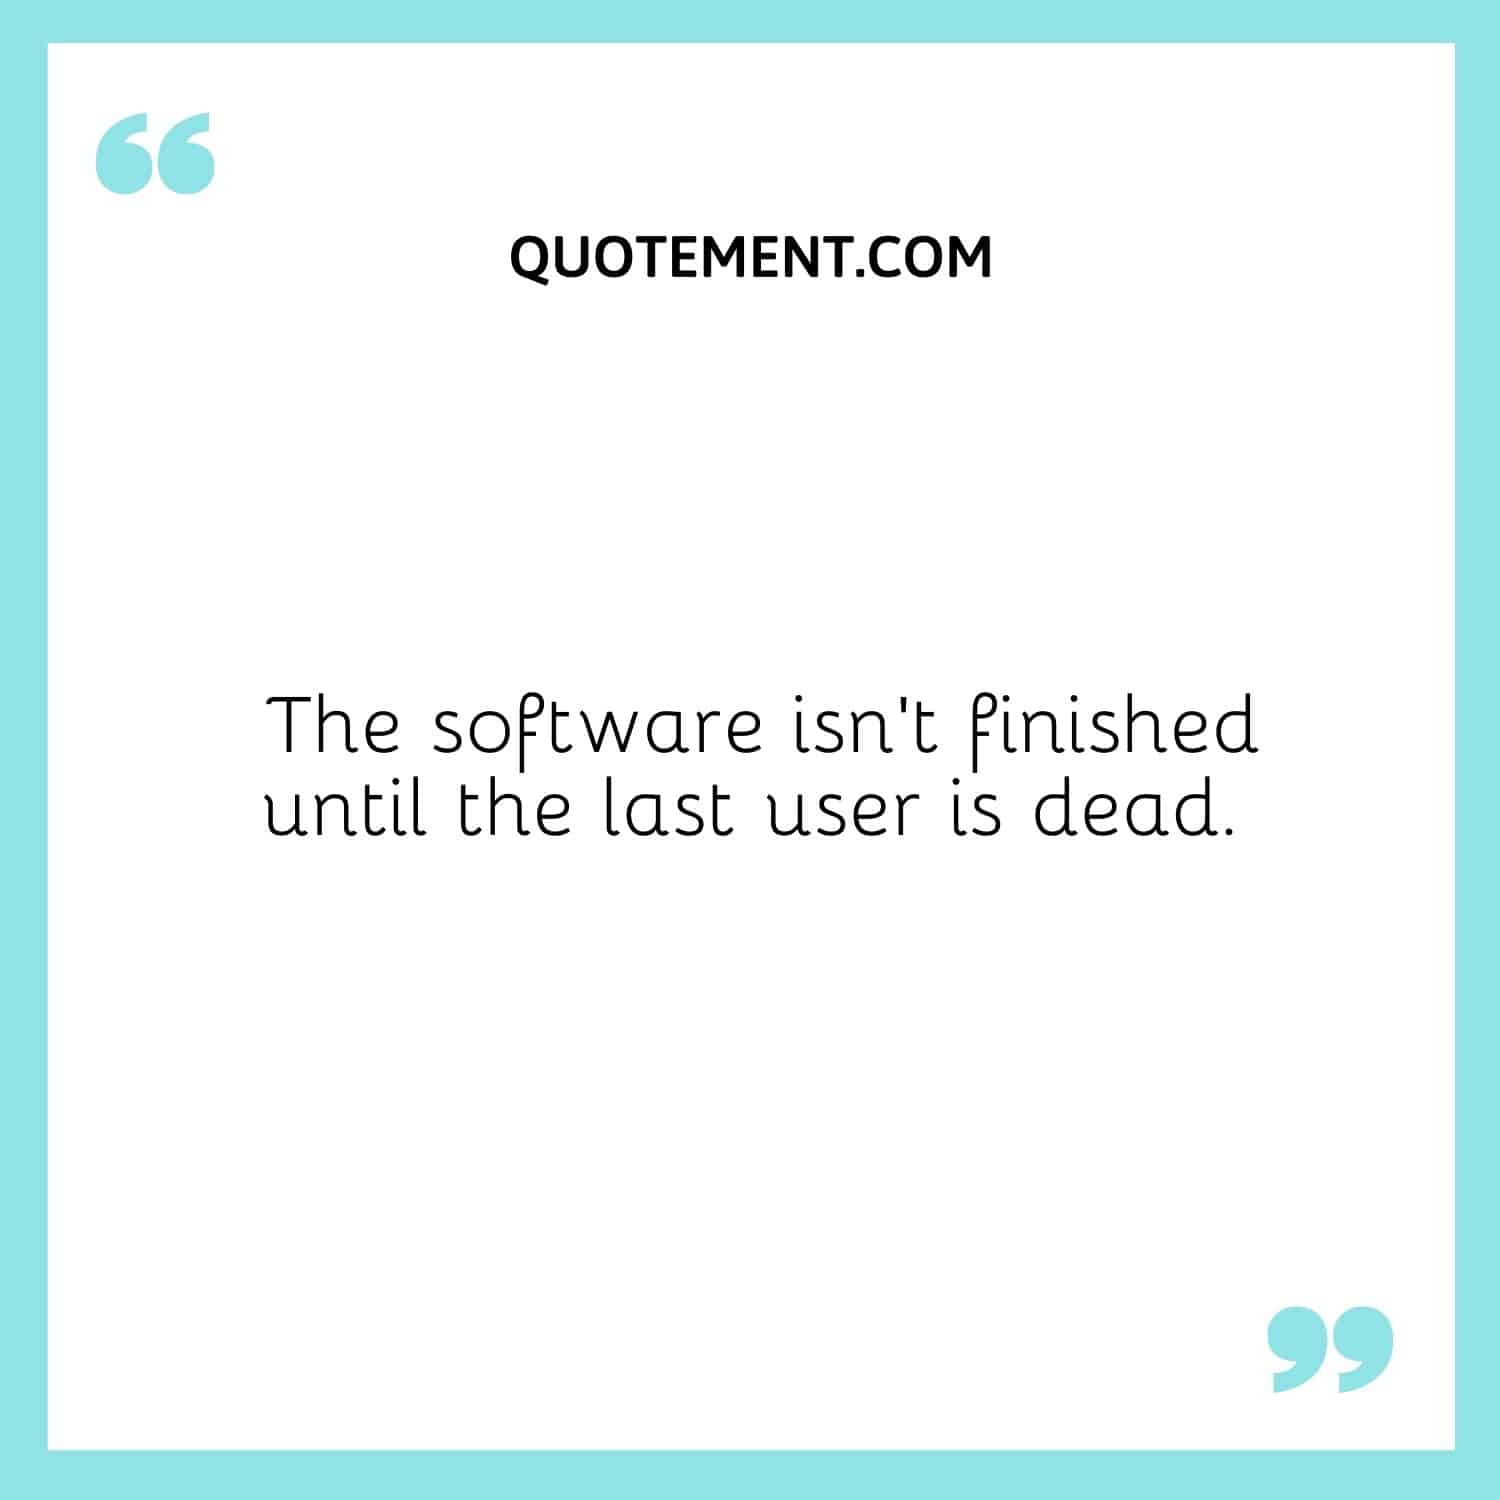 El software no está acabado hasta que muere el último usuario.